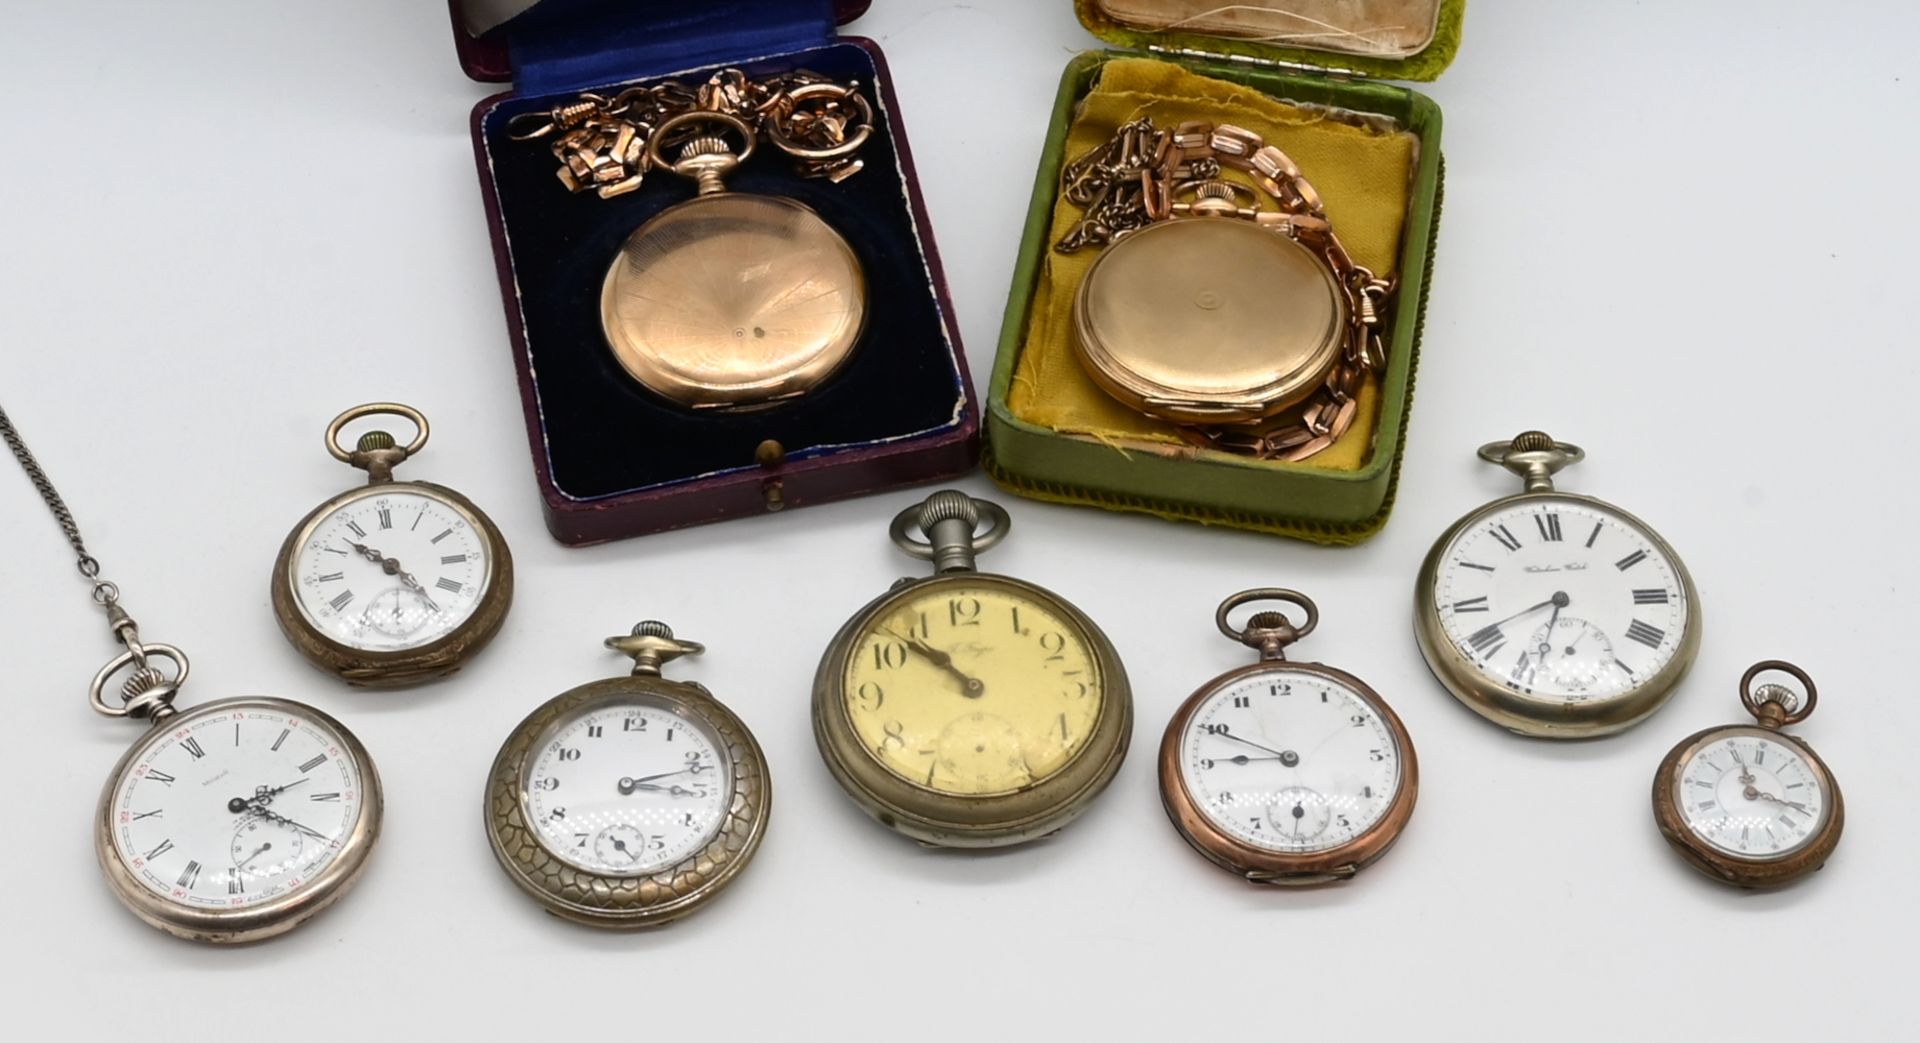 1 Damentaschenuhr RG 14ct. (1-Deckel-Gold) um 1900, 1 Herrentaschenuhr ungestempelt, um 1900, wohl 9